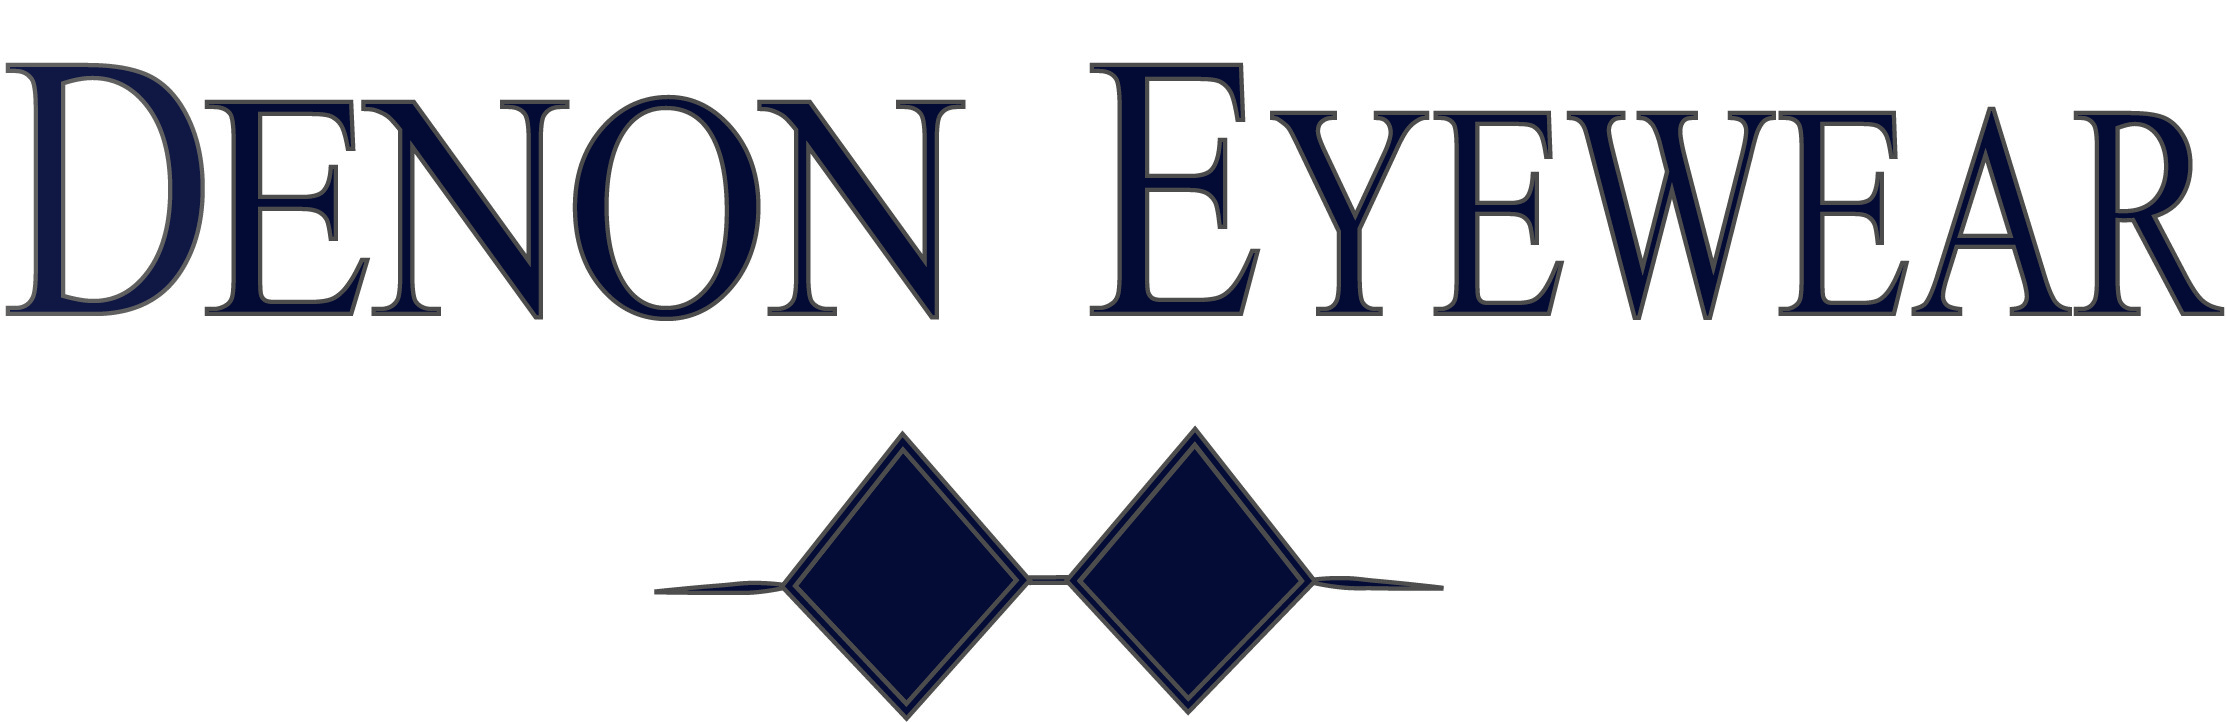 Denon Eyewear logo